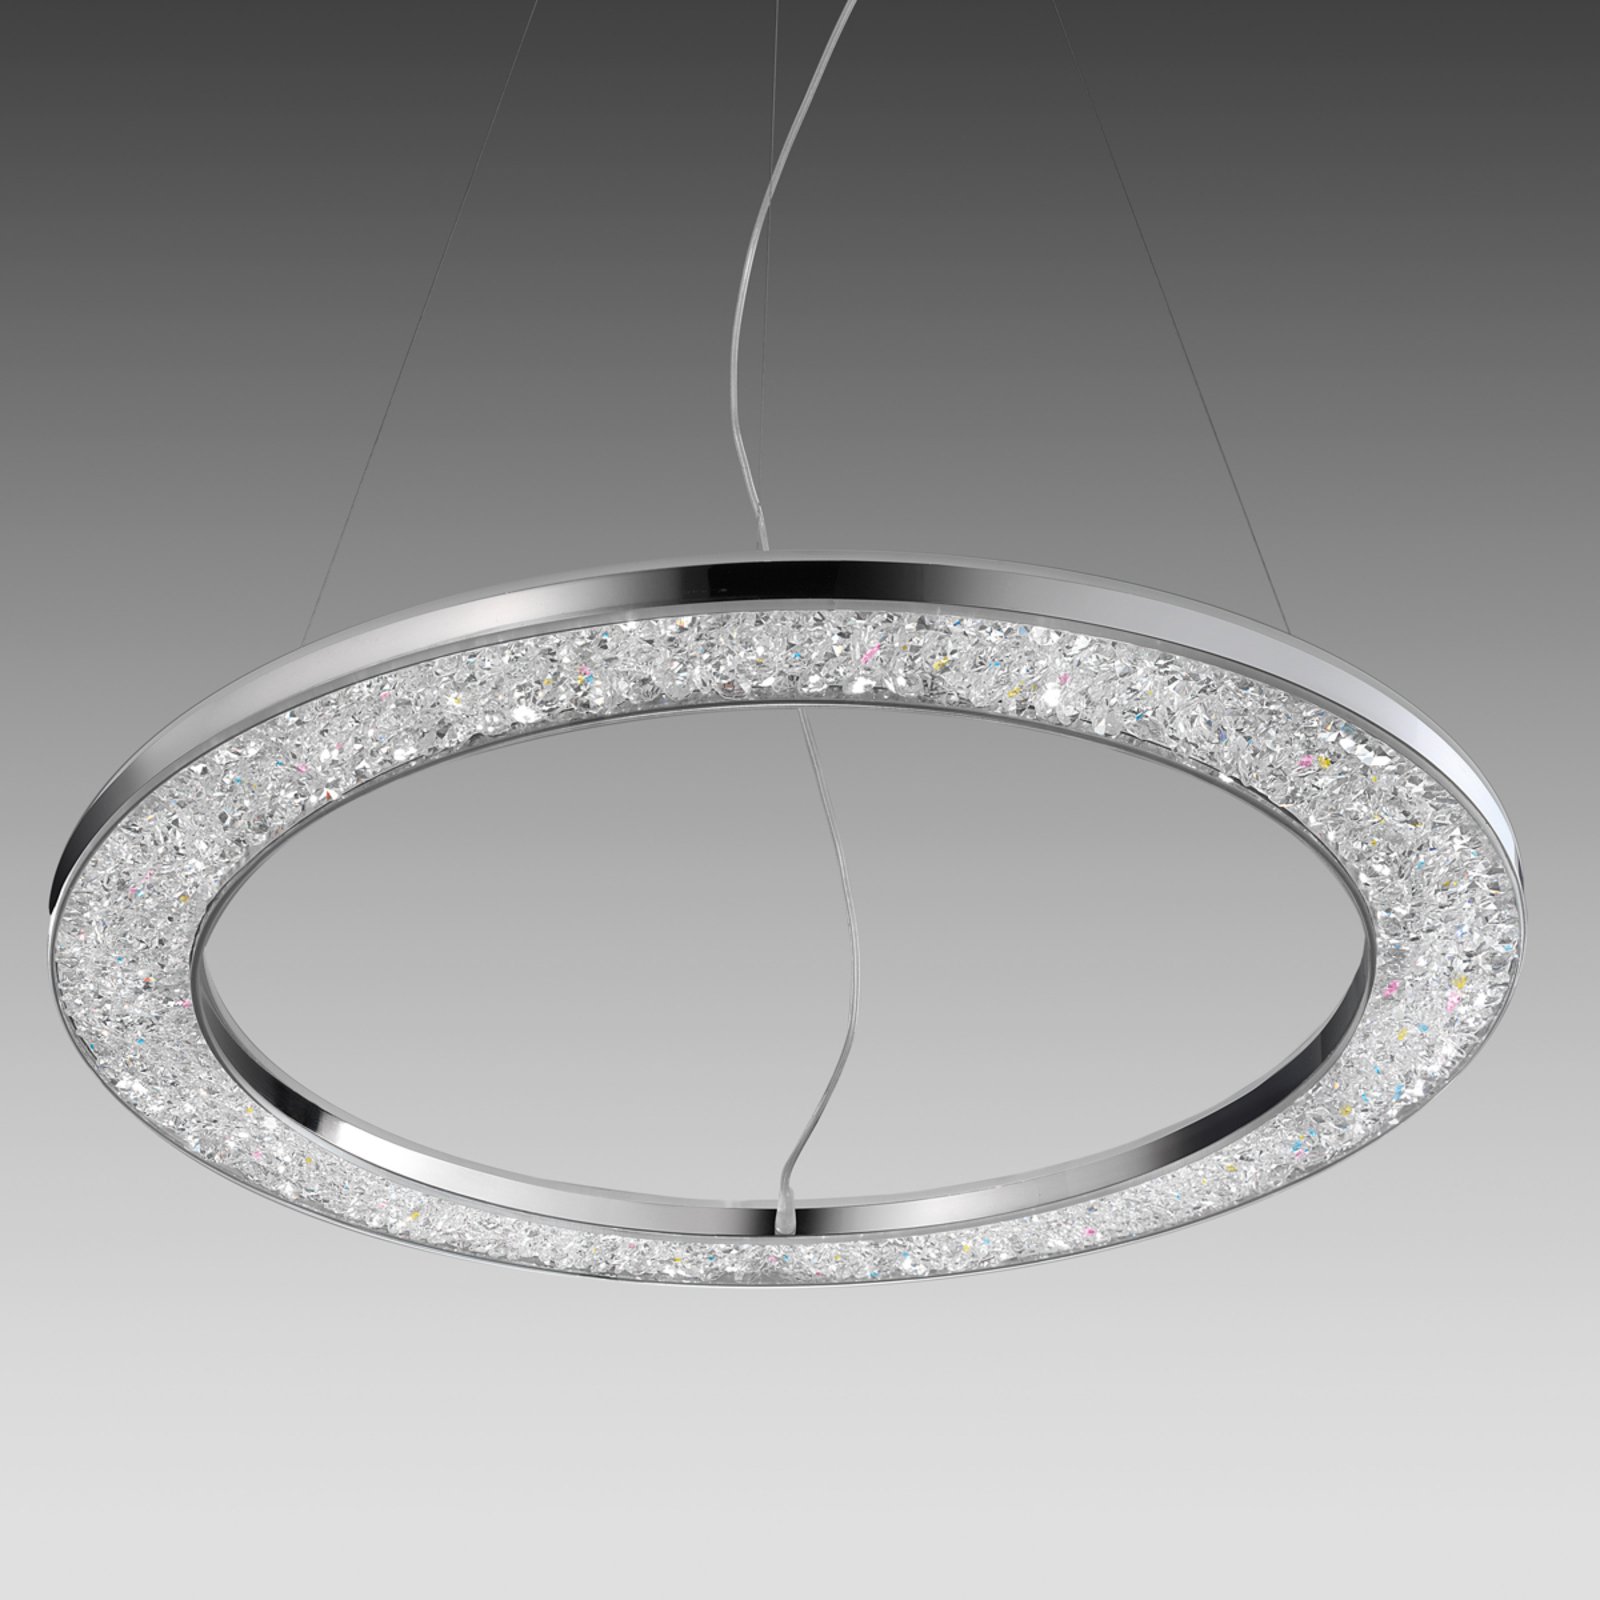 Muško - dizajnersko stropno svjetlo 60 cm